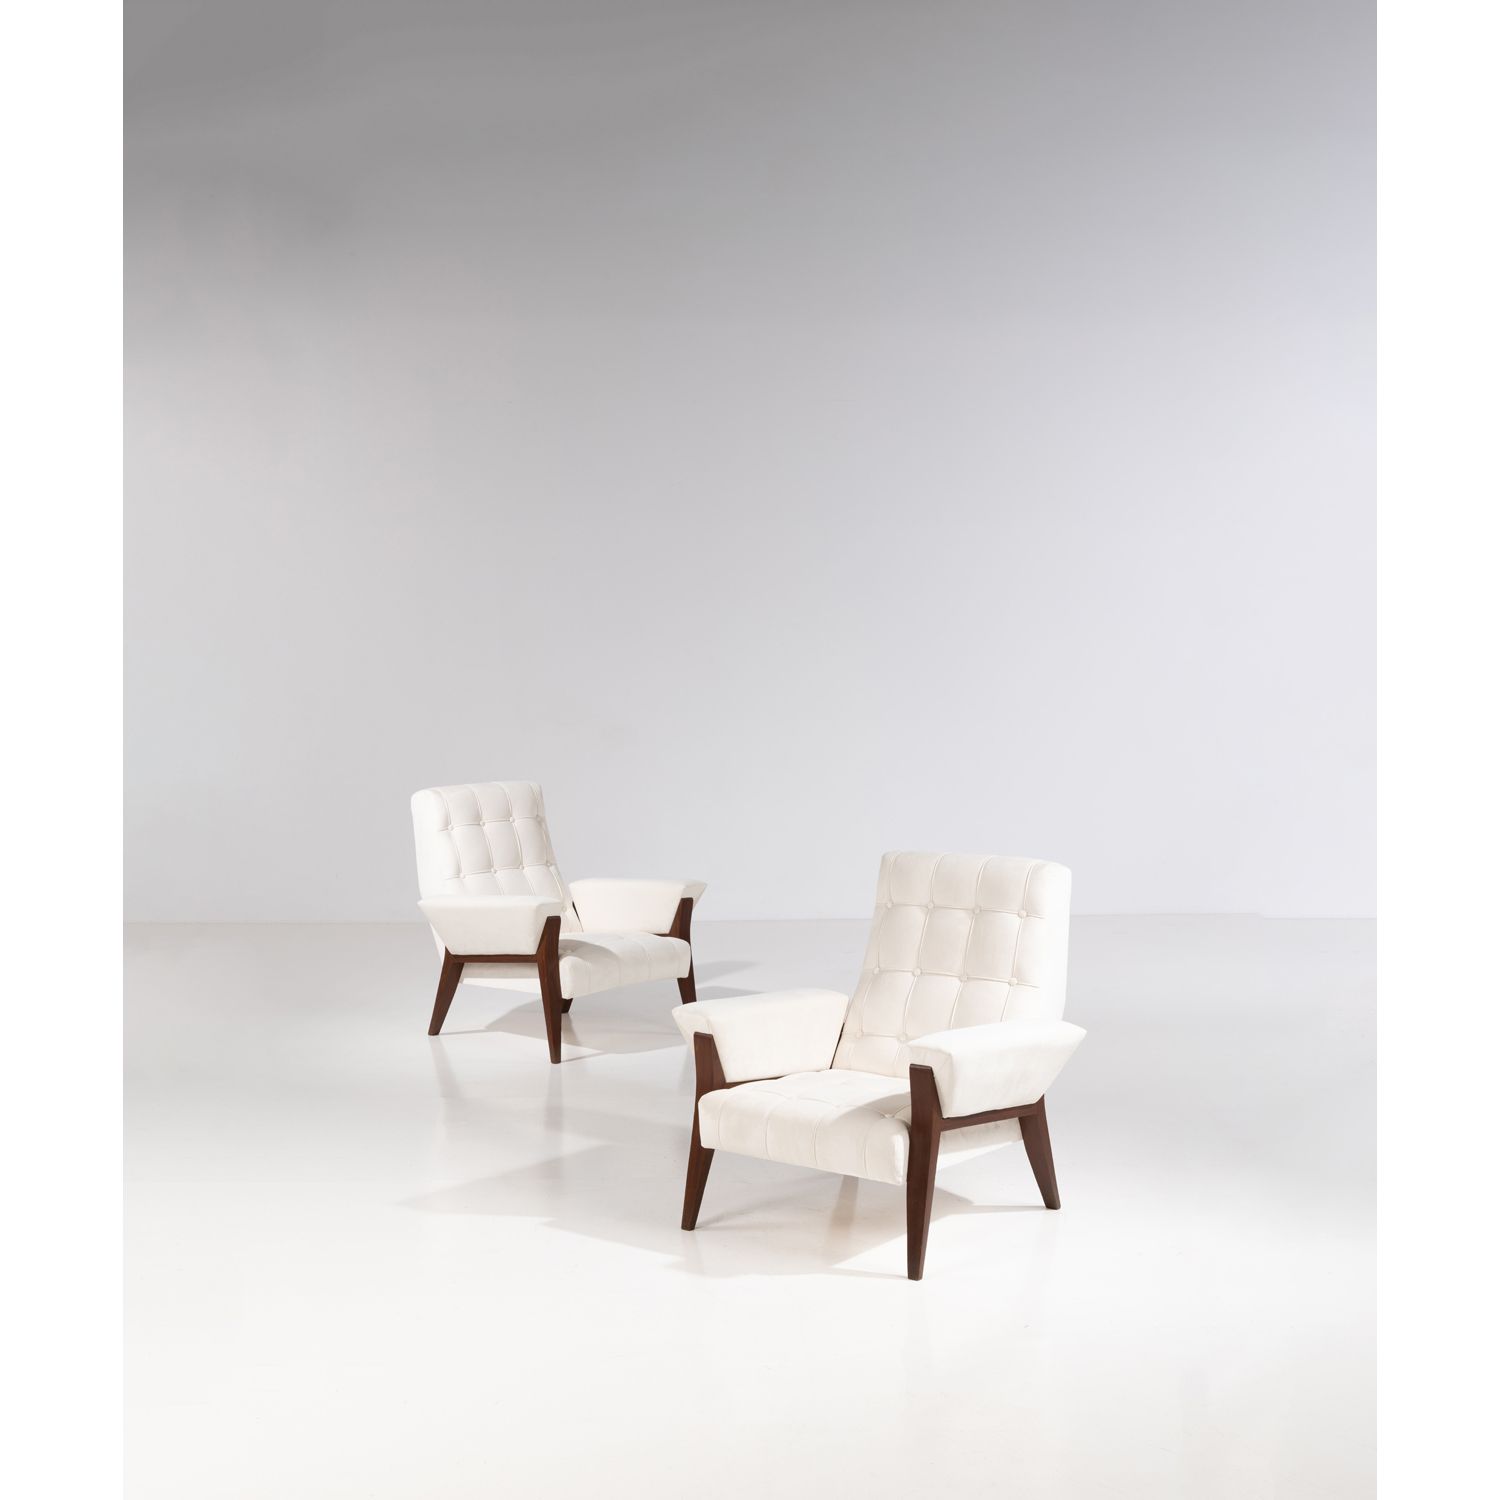 Null 意大利作品（XX

e

)

一对扶手椅

胡桃木和纺织品

1955年左右创建的模型

高82×宽80×深77厘米